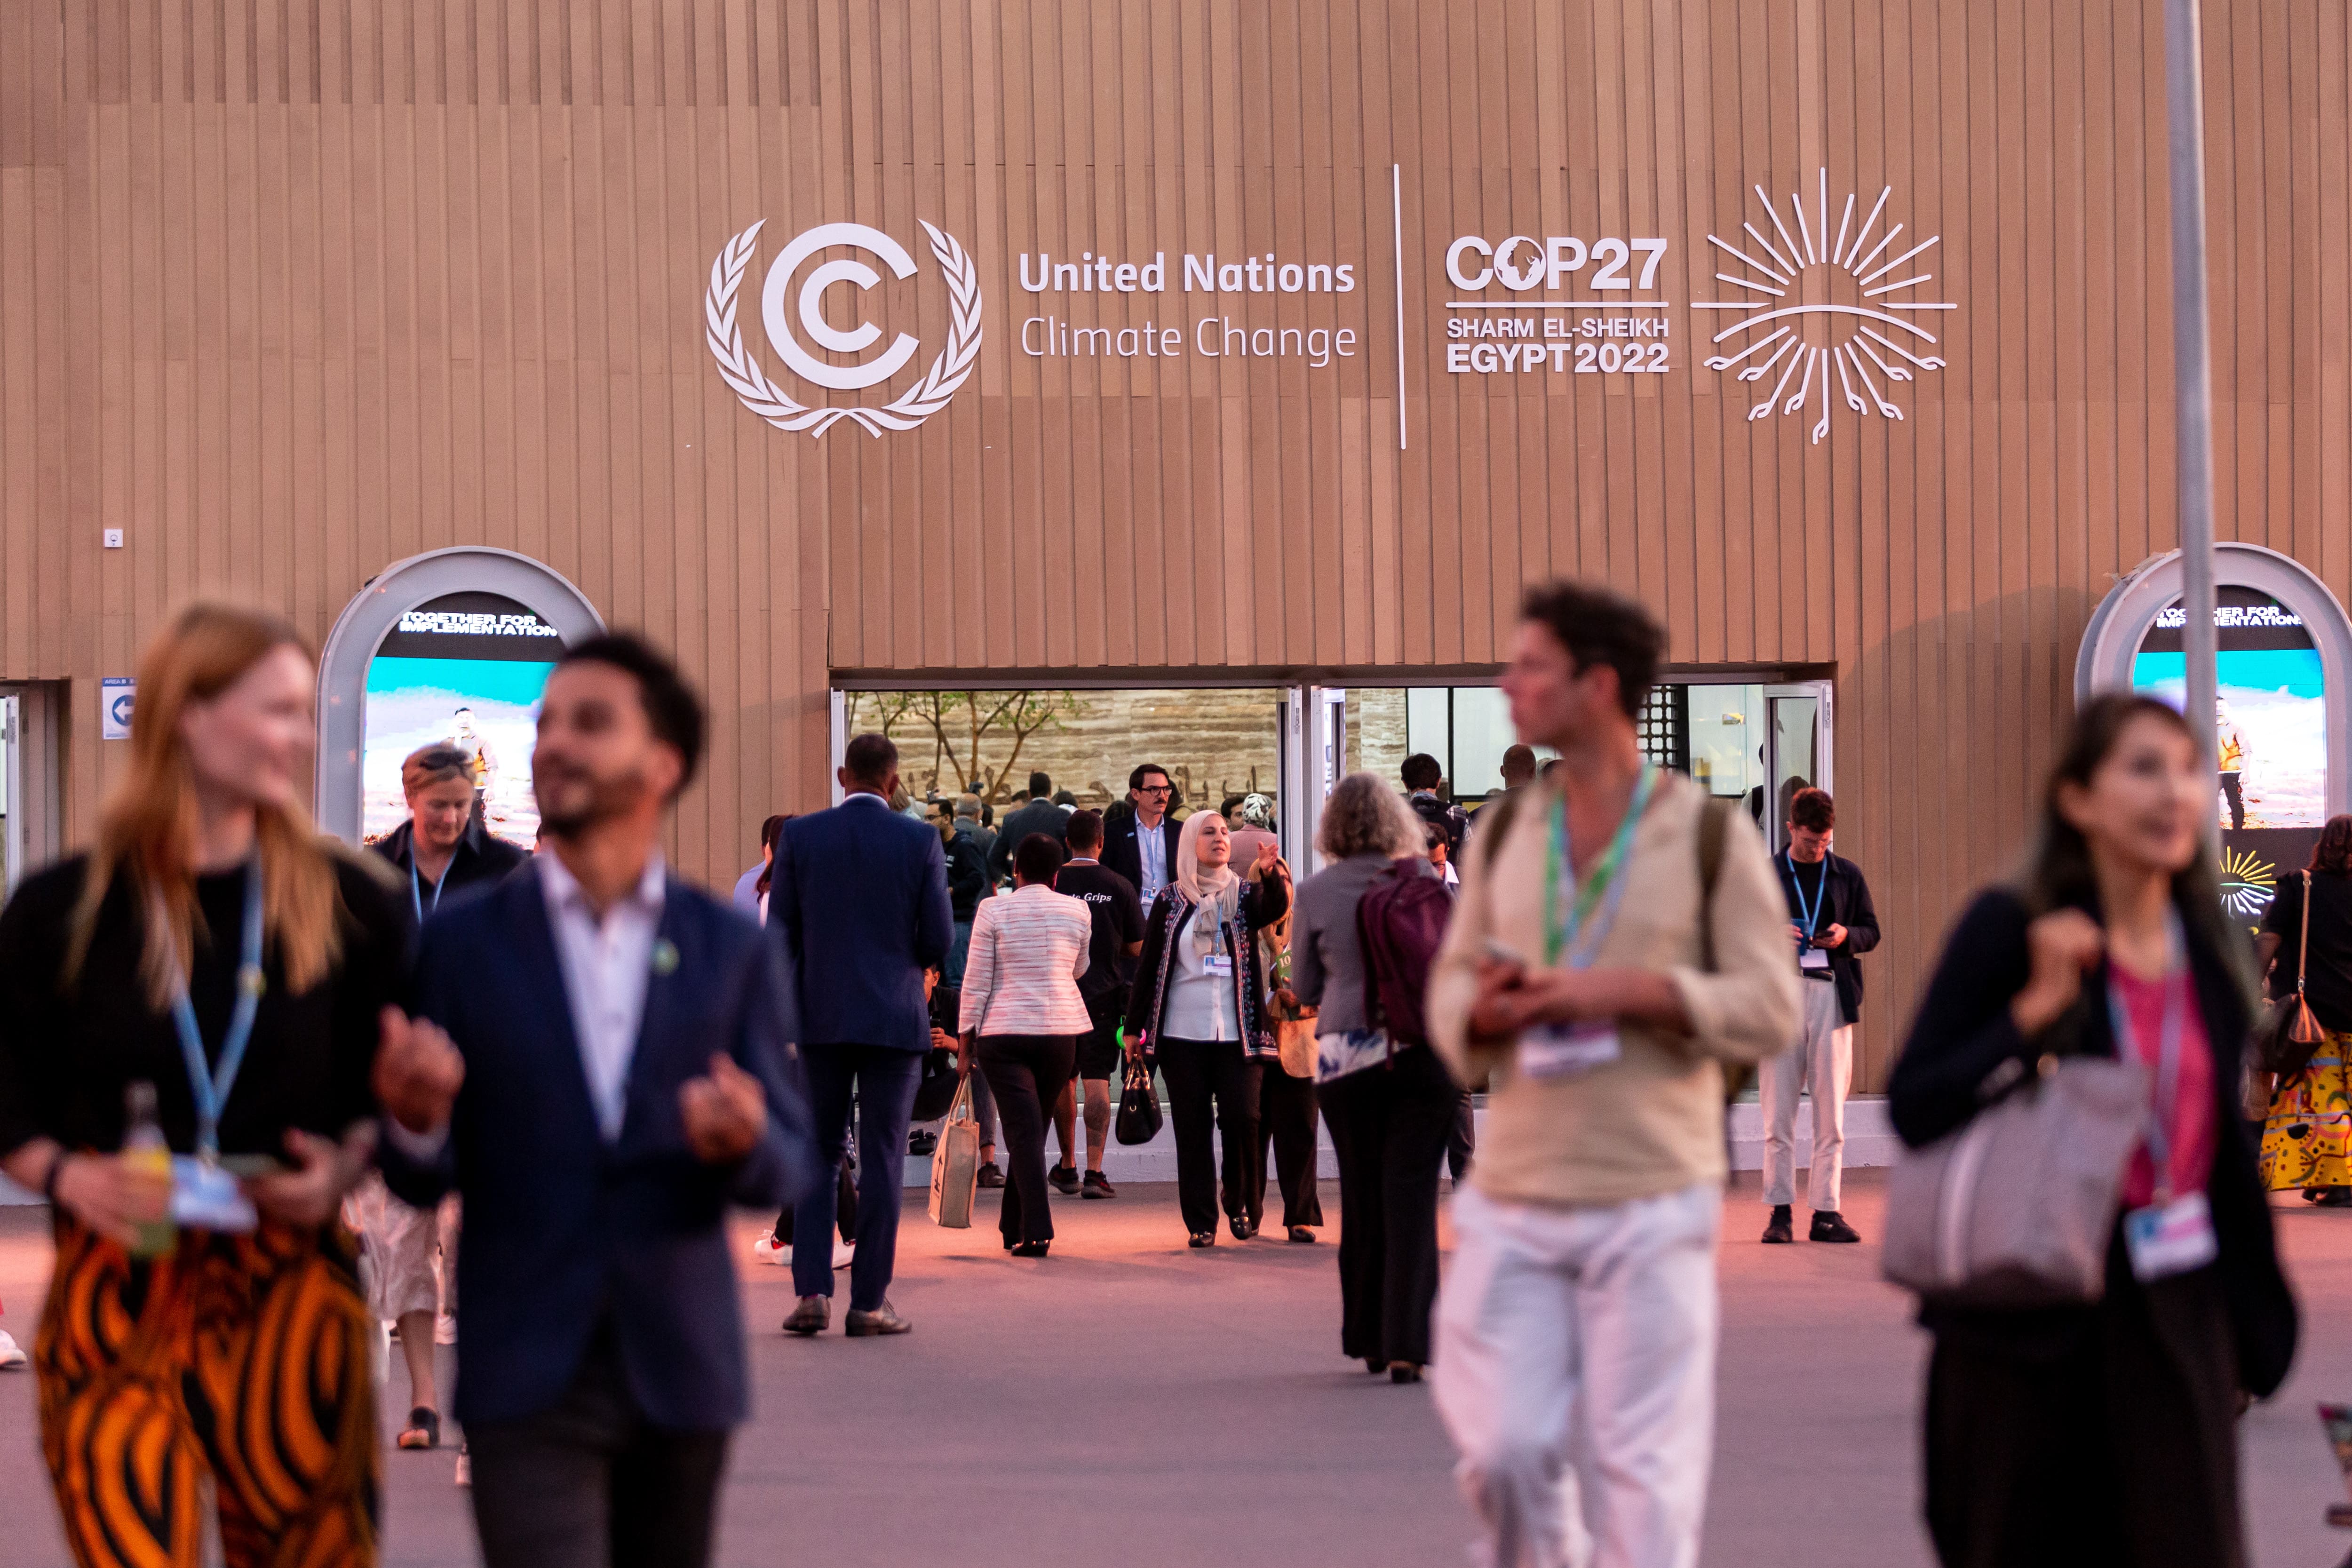 Delegates at United Nation Climate Change COP27 Egypt 2022